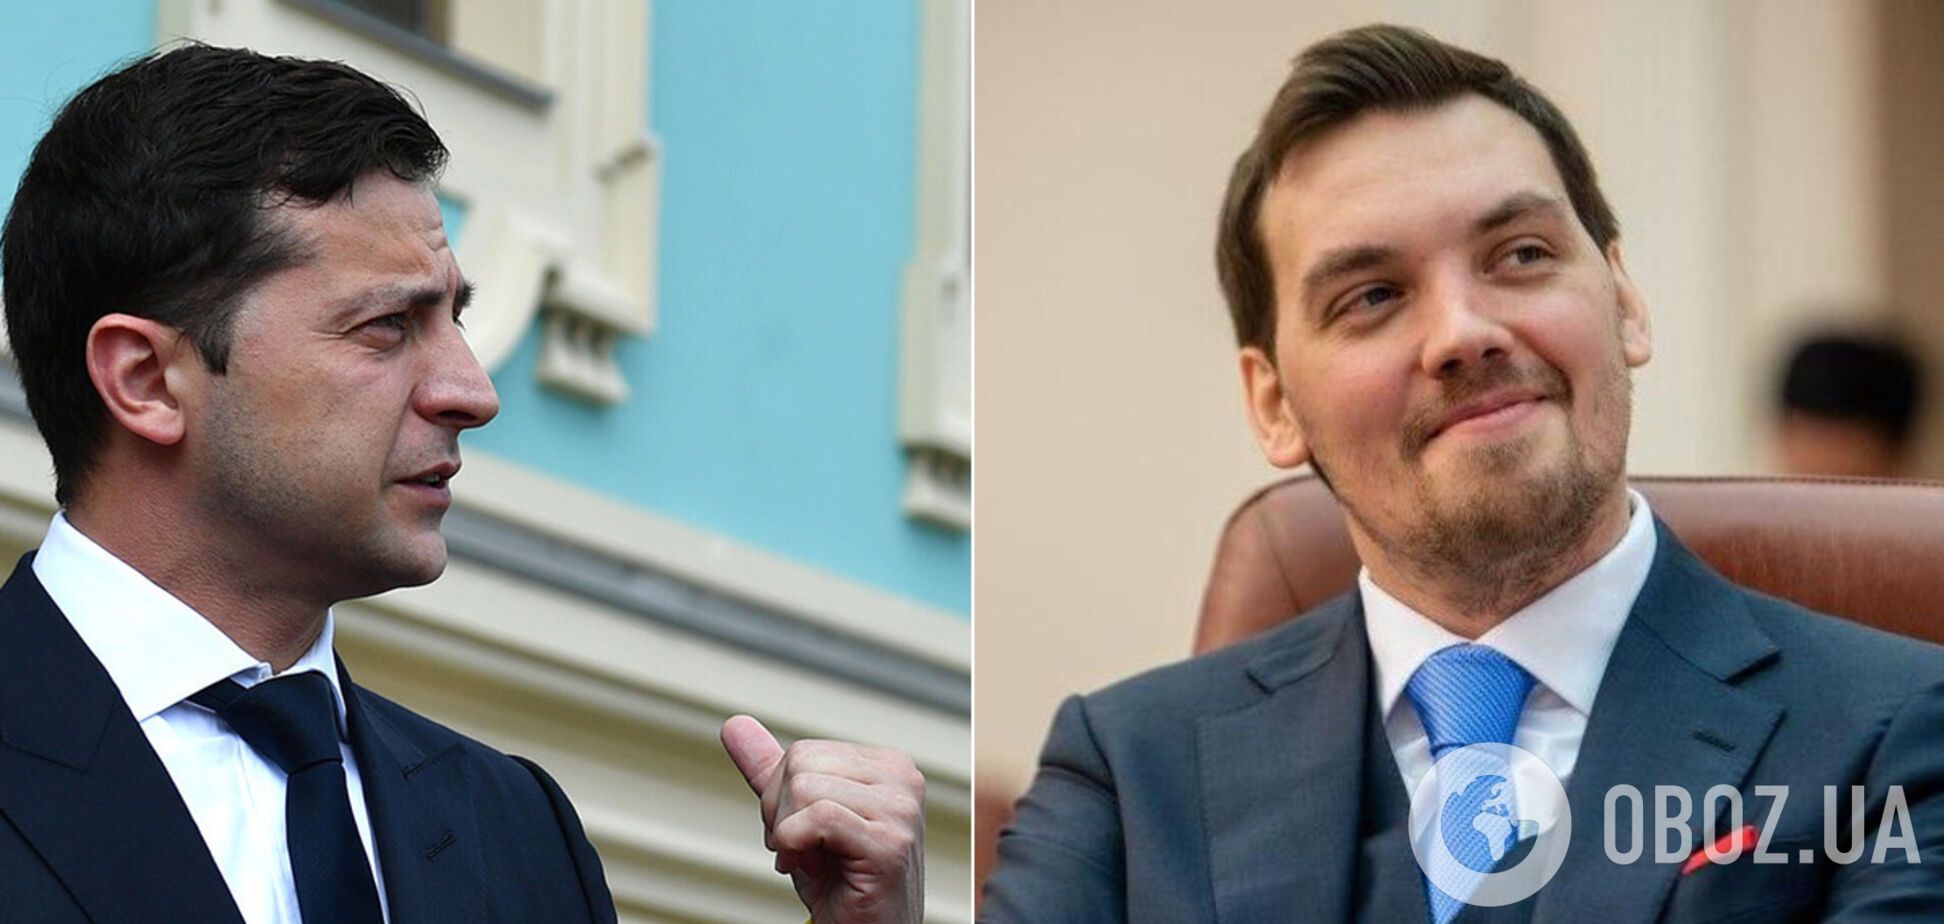 Зеленский провел совещания по отставке Гончарука: его судьба решилась